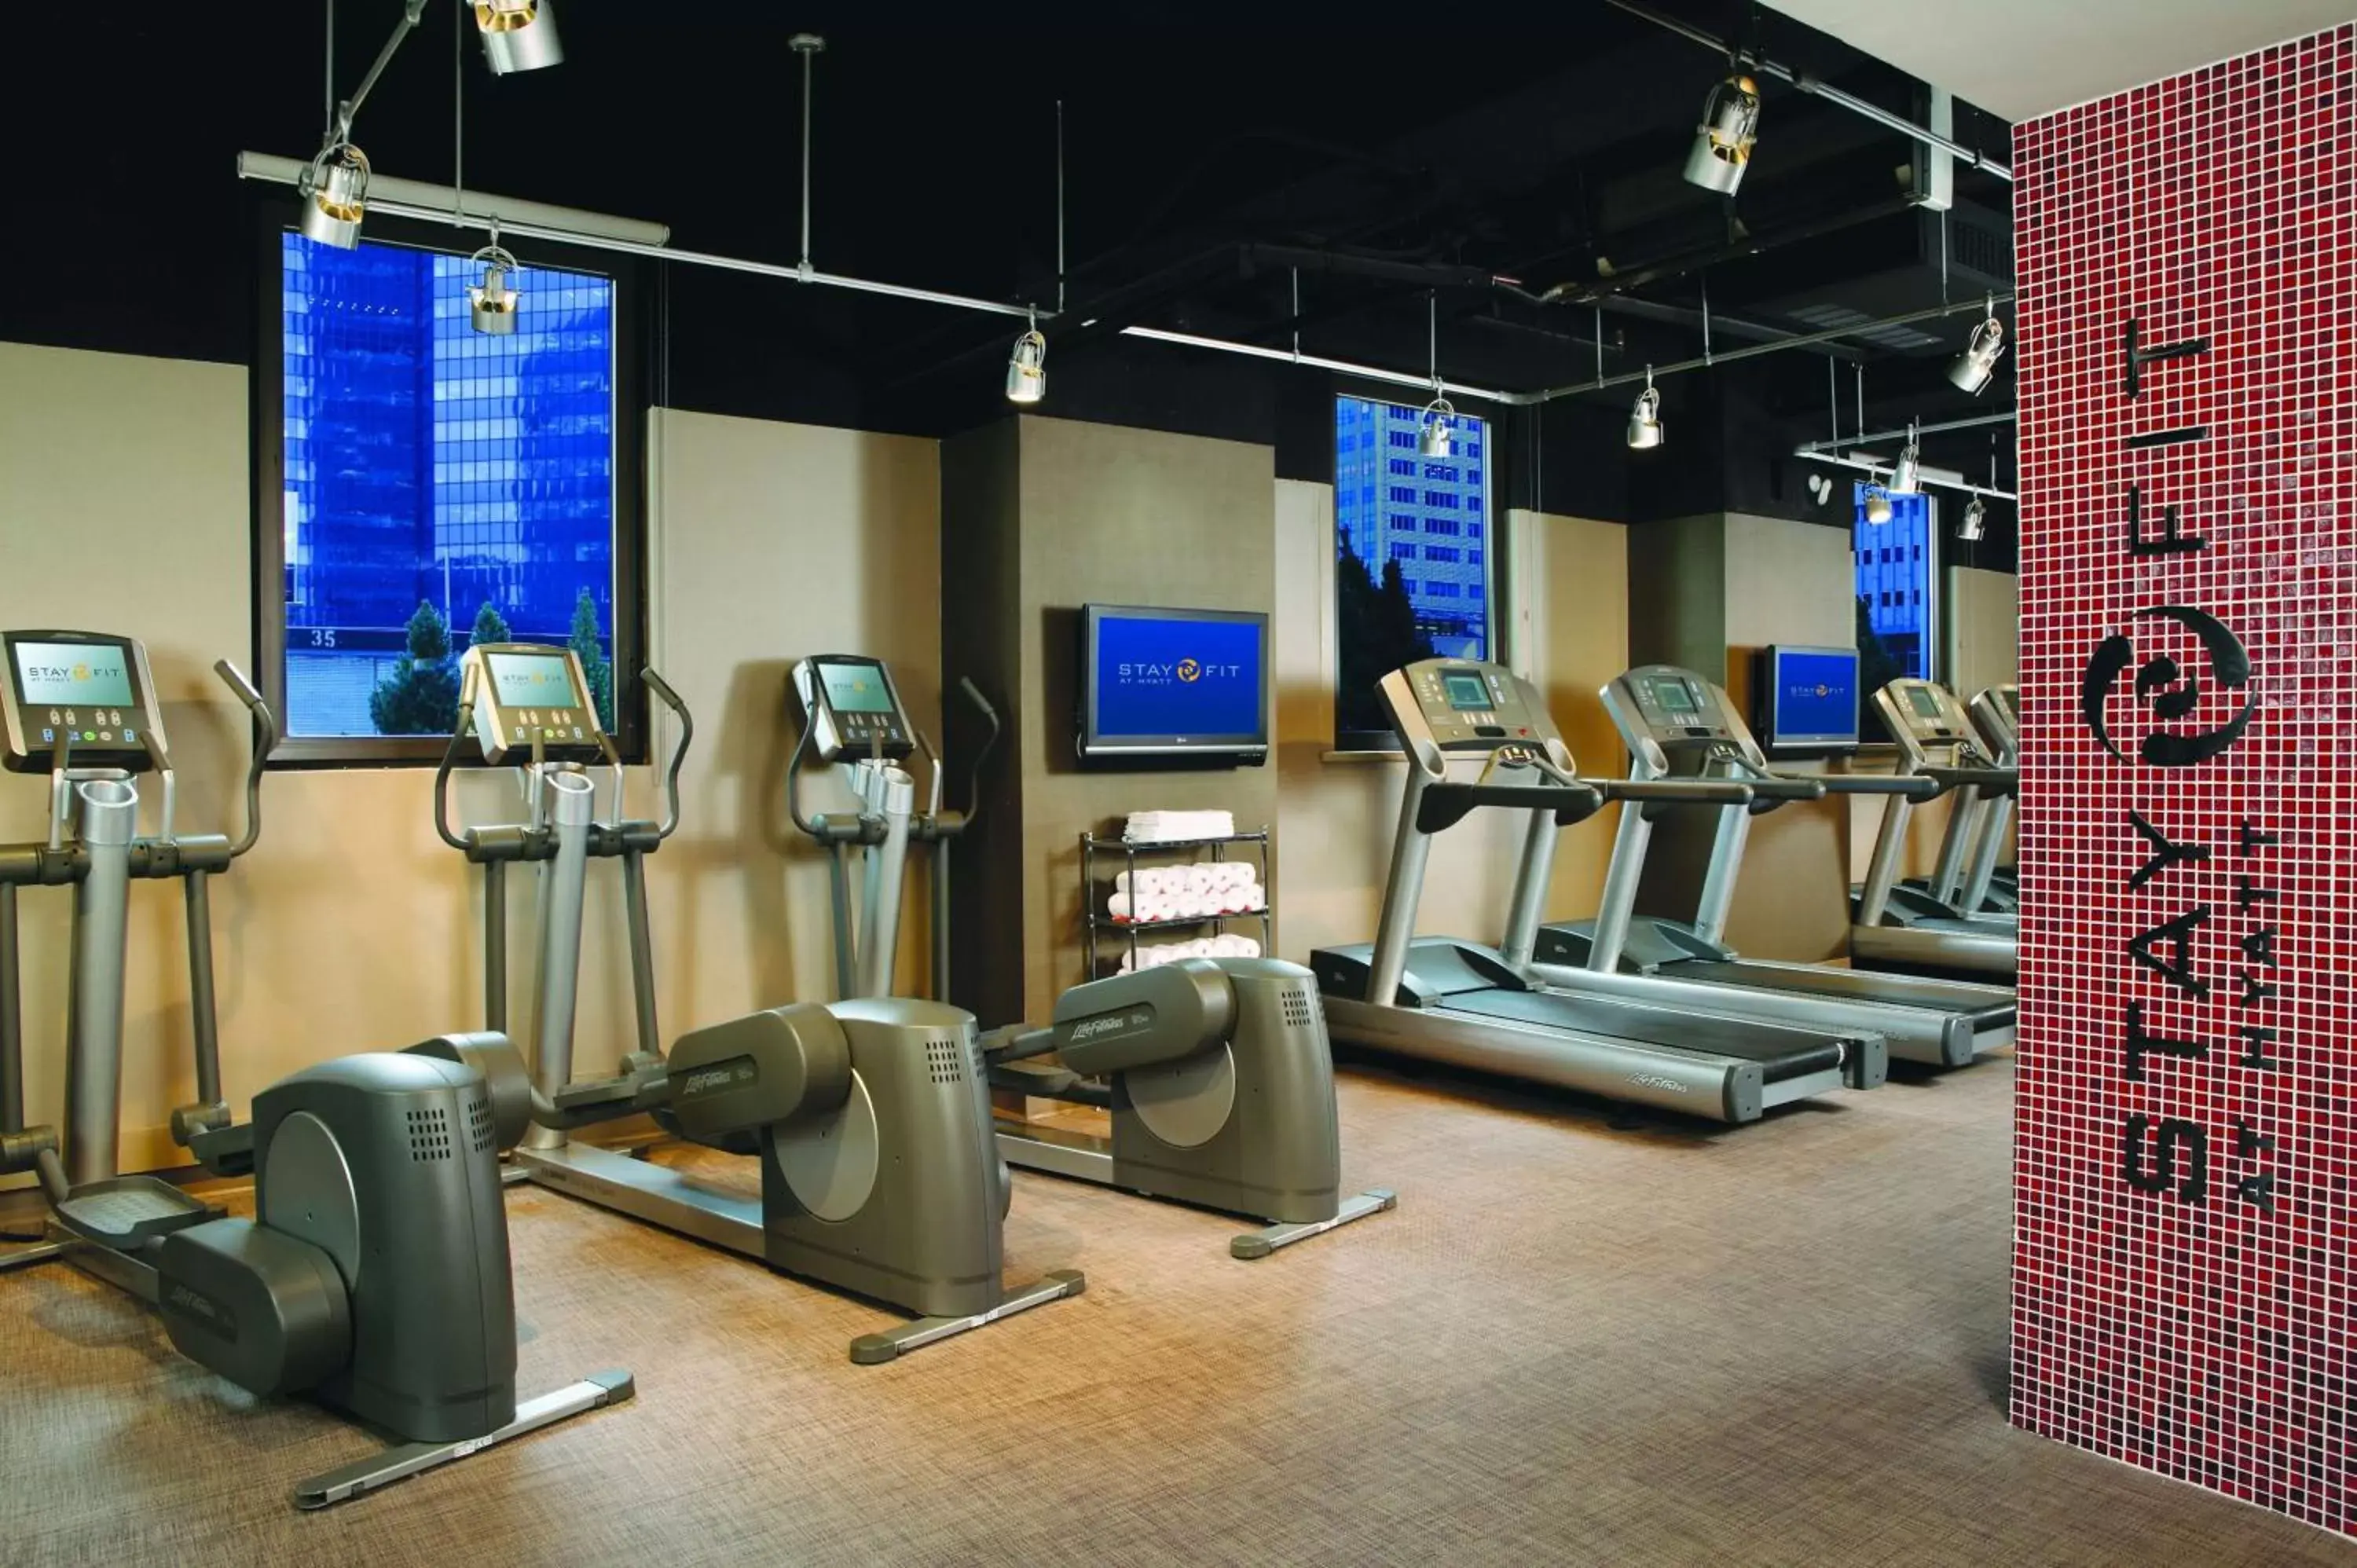 Fitness centre/facilities, Fitness Center/Facilities in Hyatt Grand Central New York